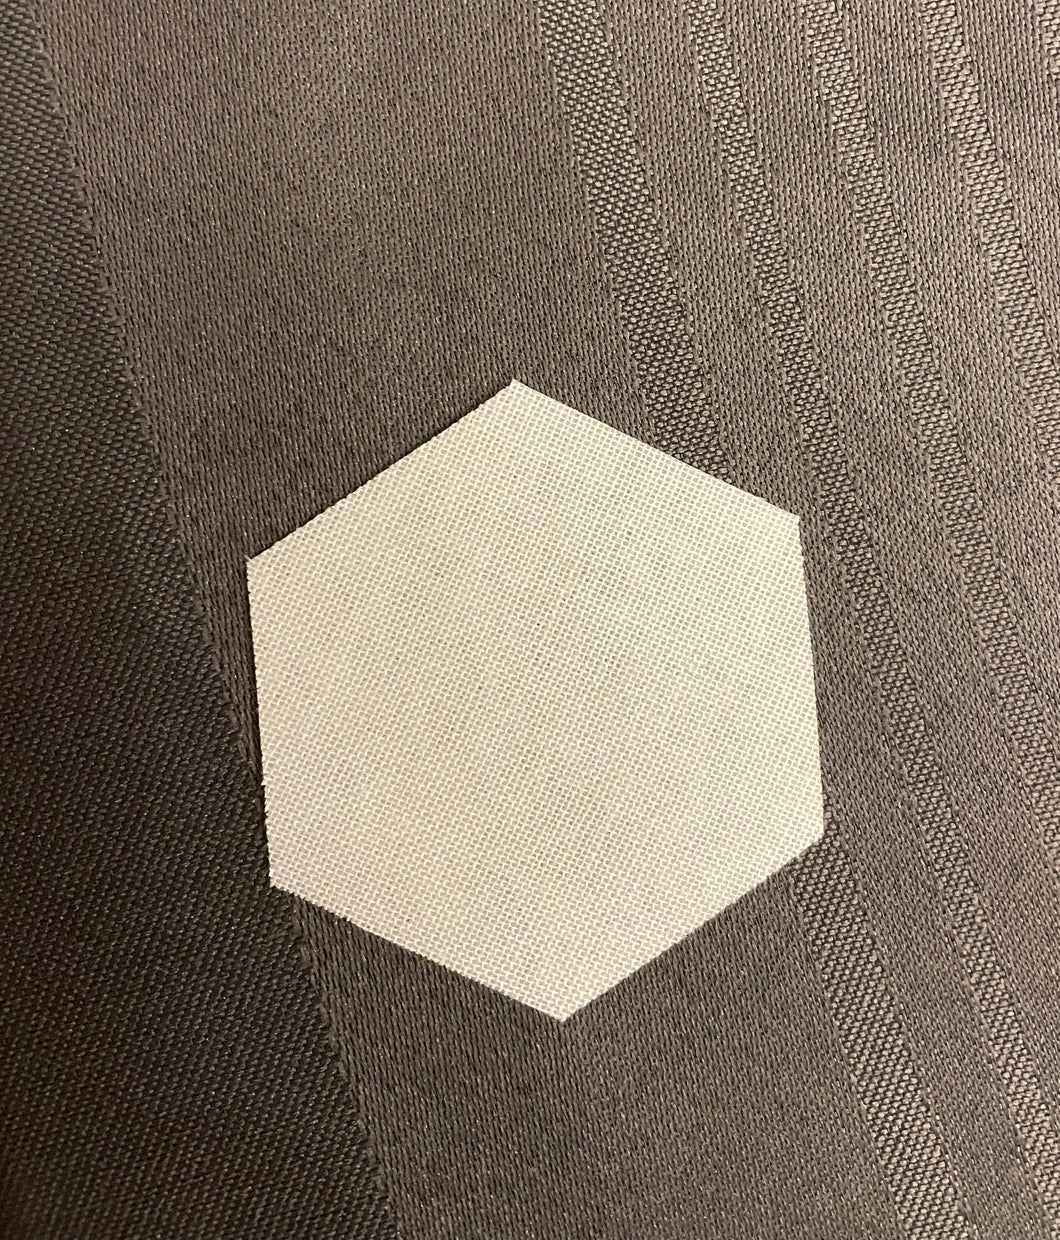 Hexiforms - Hexagons